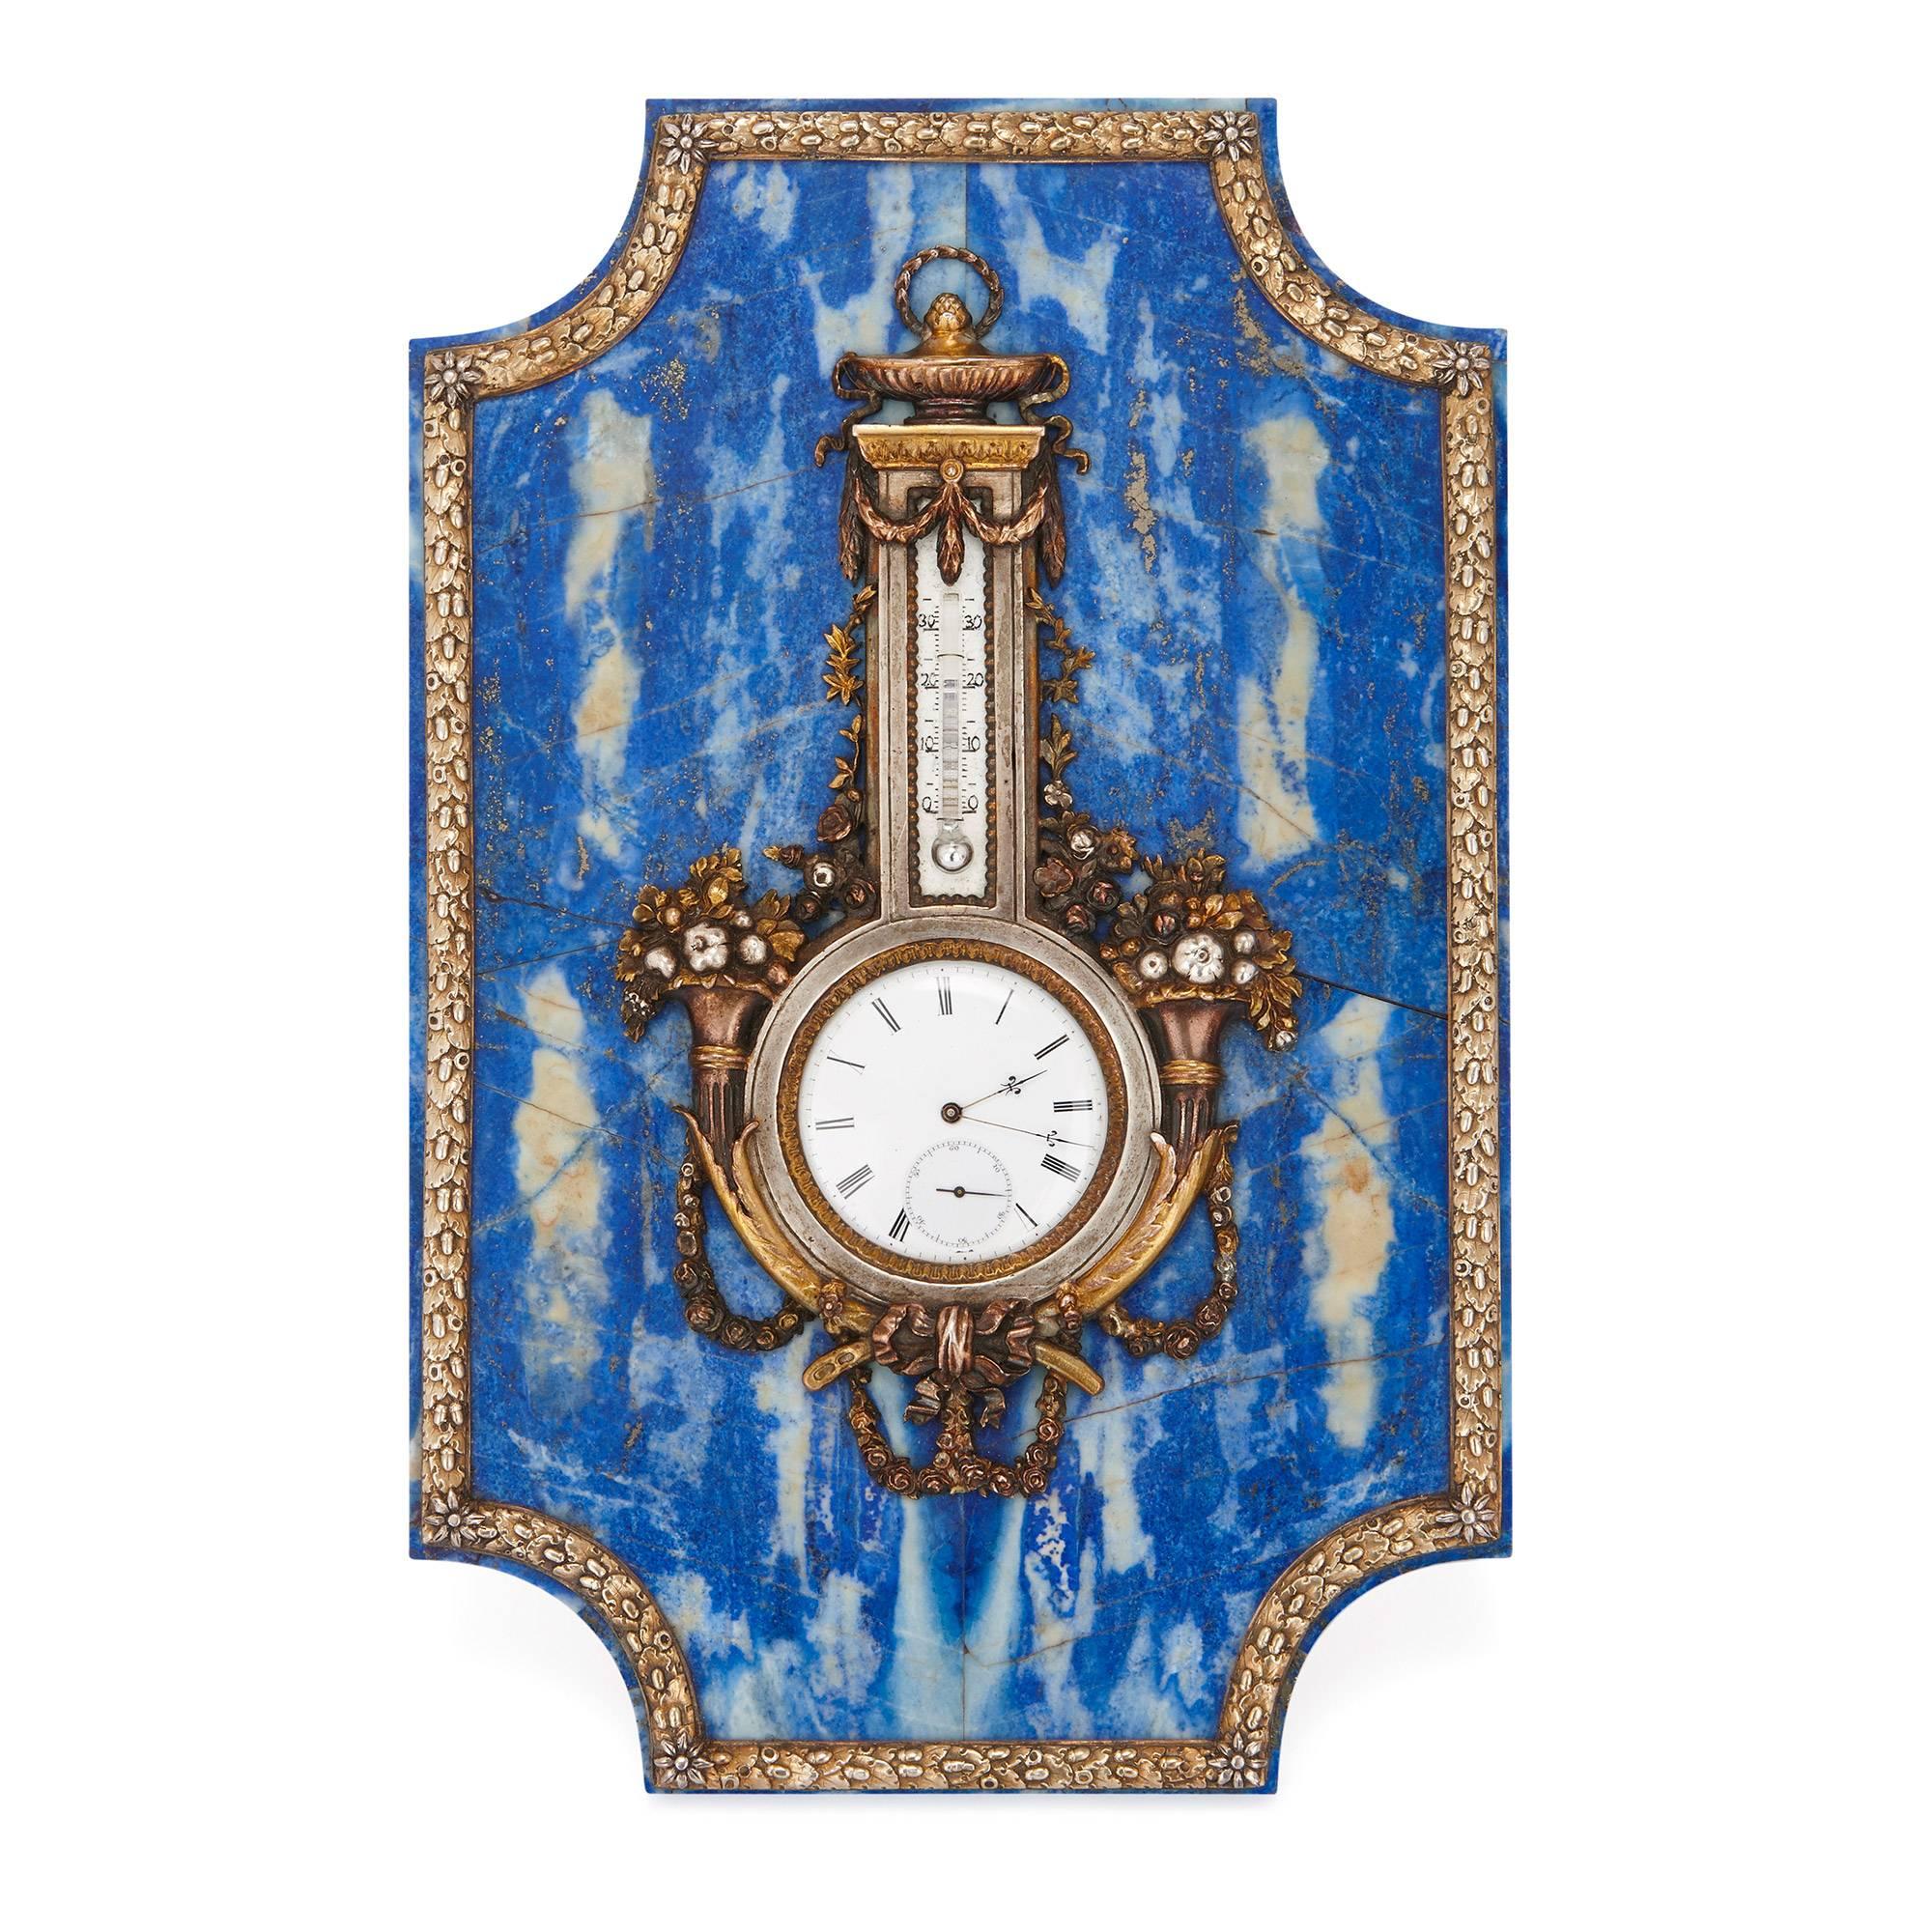 Le corps de cette belle horloge de table et baromètre est plaqué en lapis-lazuli et soutenu par un bras articulé au dos. Les cadrans de l'horloge et du baromètre au centre sont tous deux en émail blanc et encadrés de montures décoratives en métal